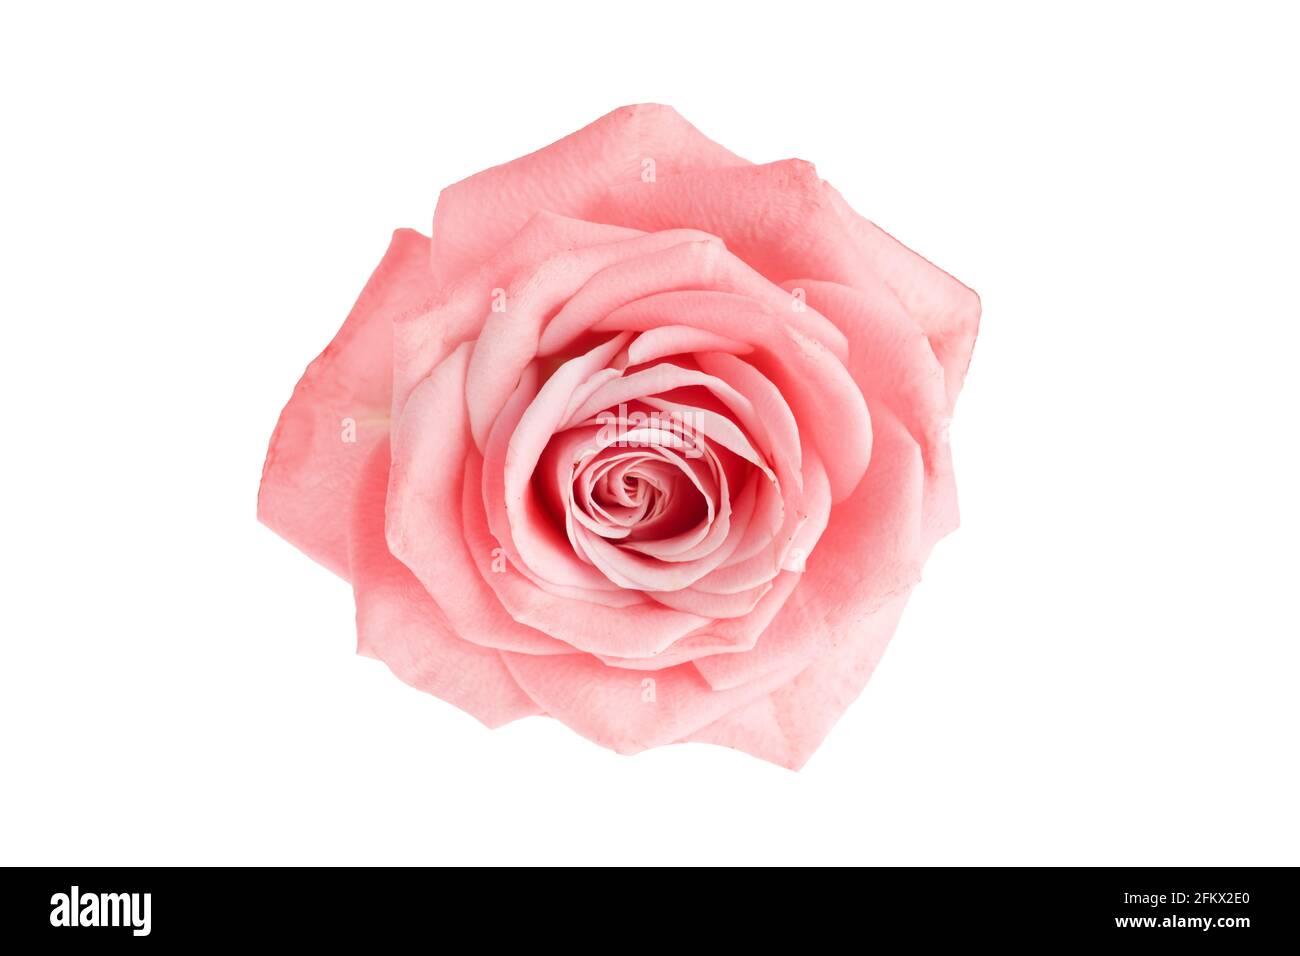 Beautiful single pink rose isolated on white background Stock Photo